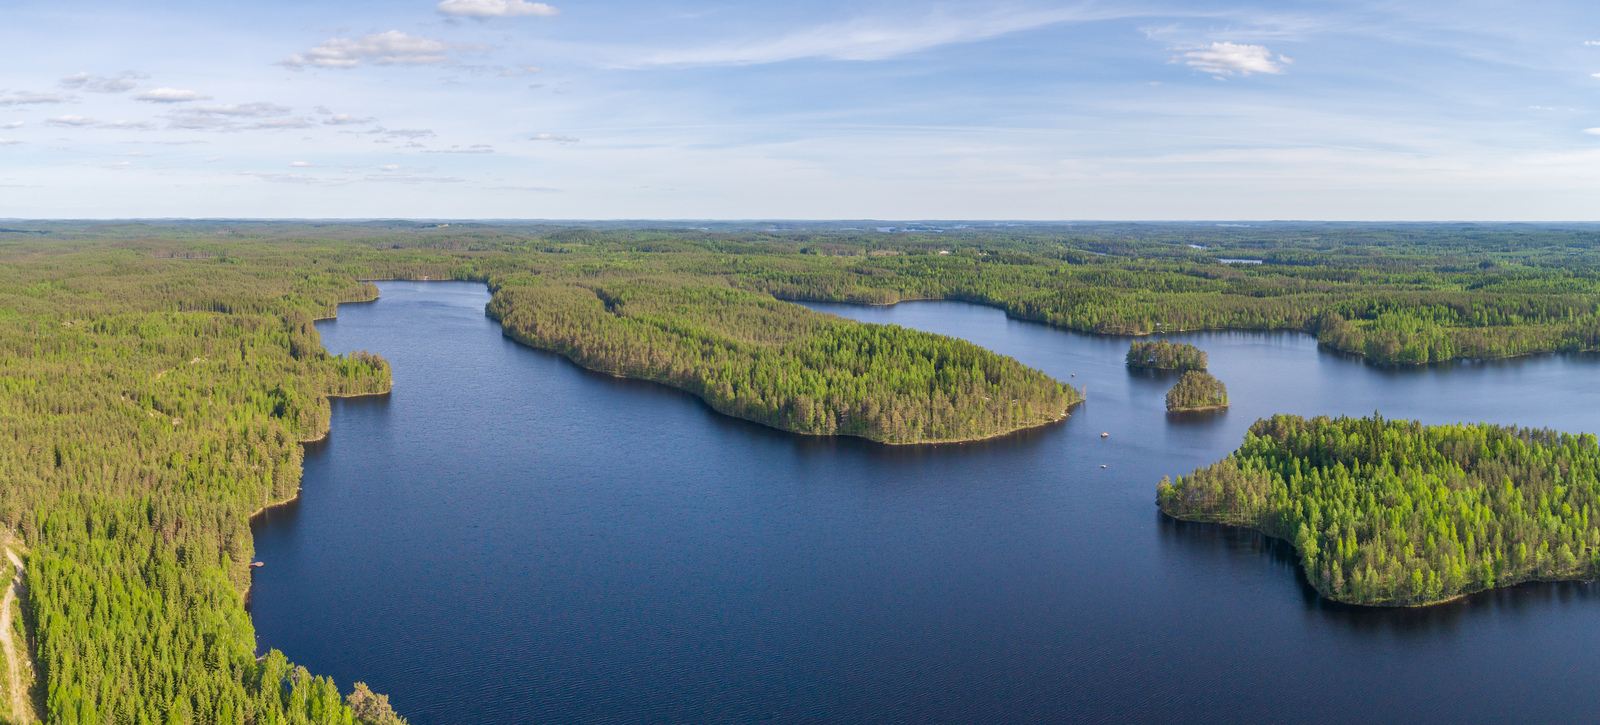 Kesämaisemassa metsien reunustama järvi jatkuu moneen eri suuntaan ja siinä on saaria. Ilmakuva.